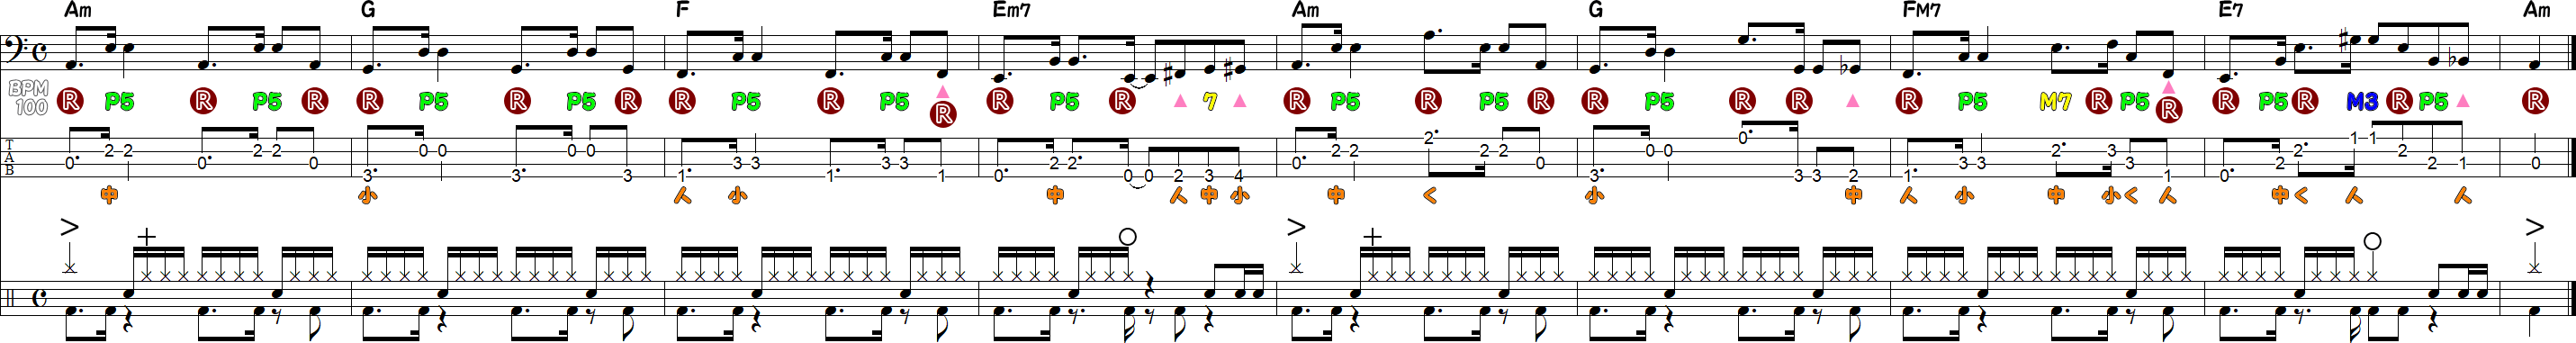 ベースラインとドラム譜の練習③の8小節